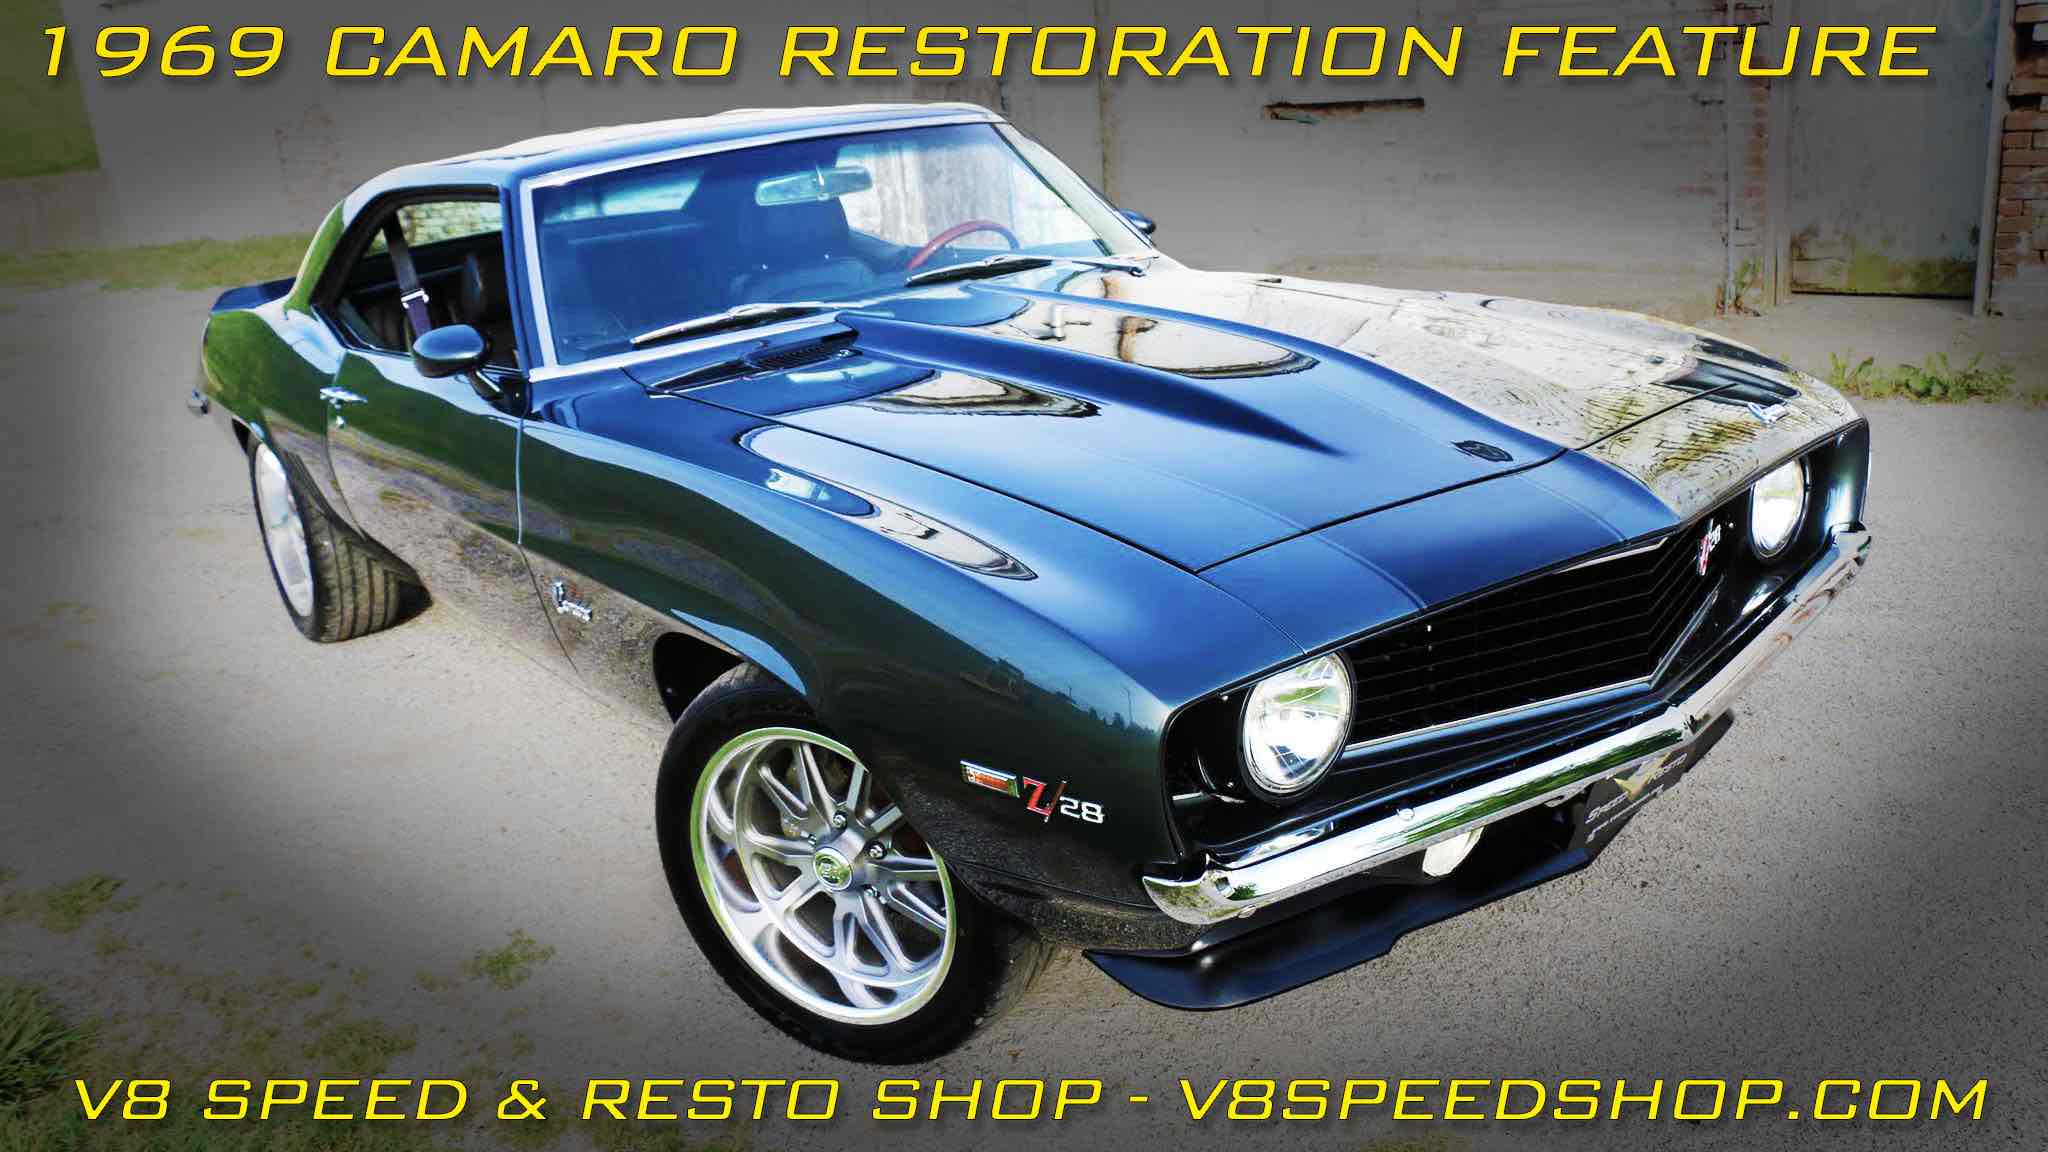 1969 Camaro "Carbon Flash" Restoration At V8 Speed & Resto Shop